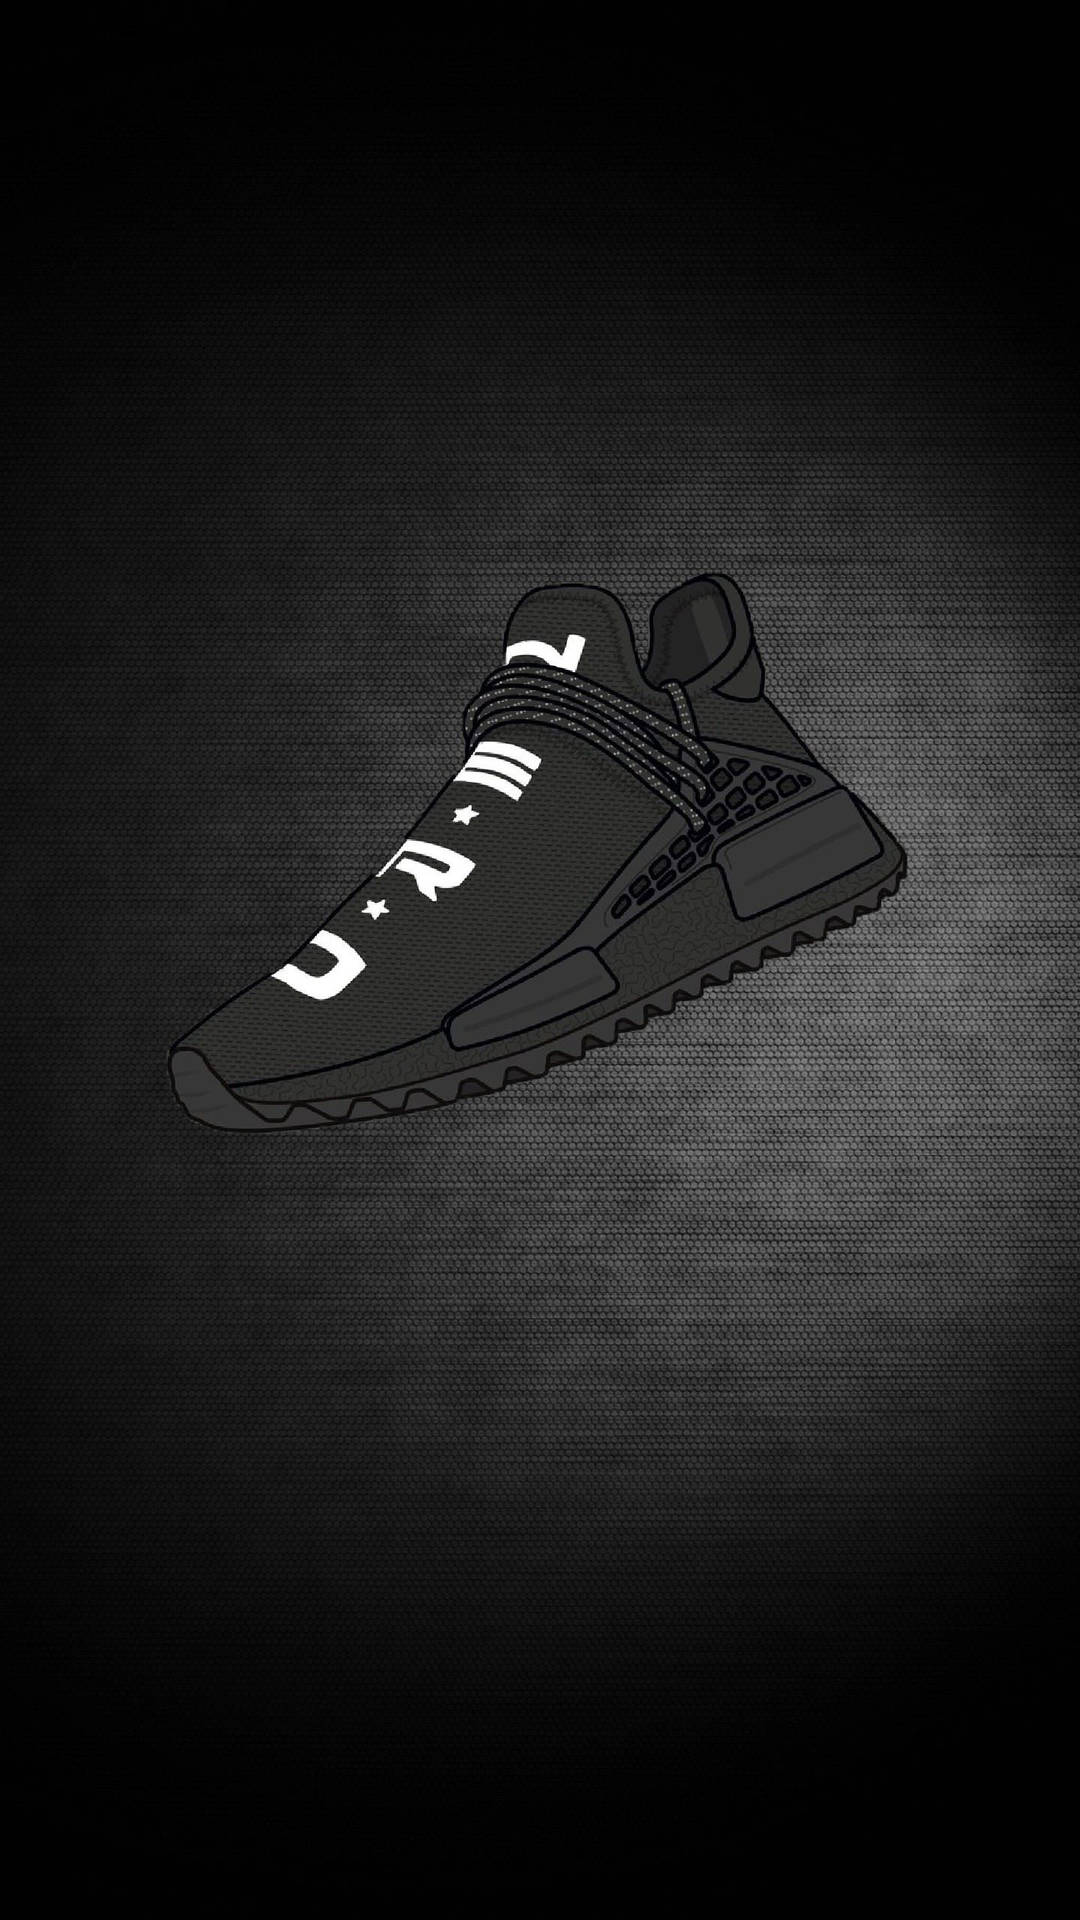 Ilustracióndigital De Zapatillas Adidas Nmd Human Race Cartoon En Color Negro. Fondo de pantalla